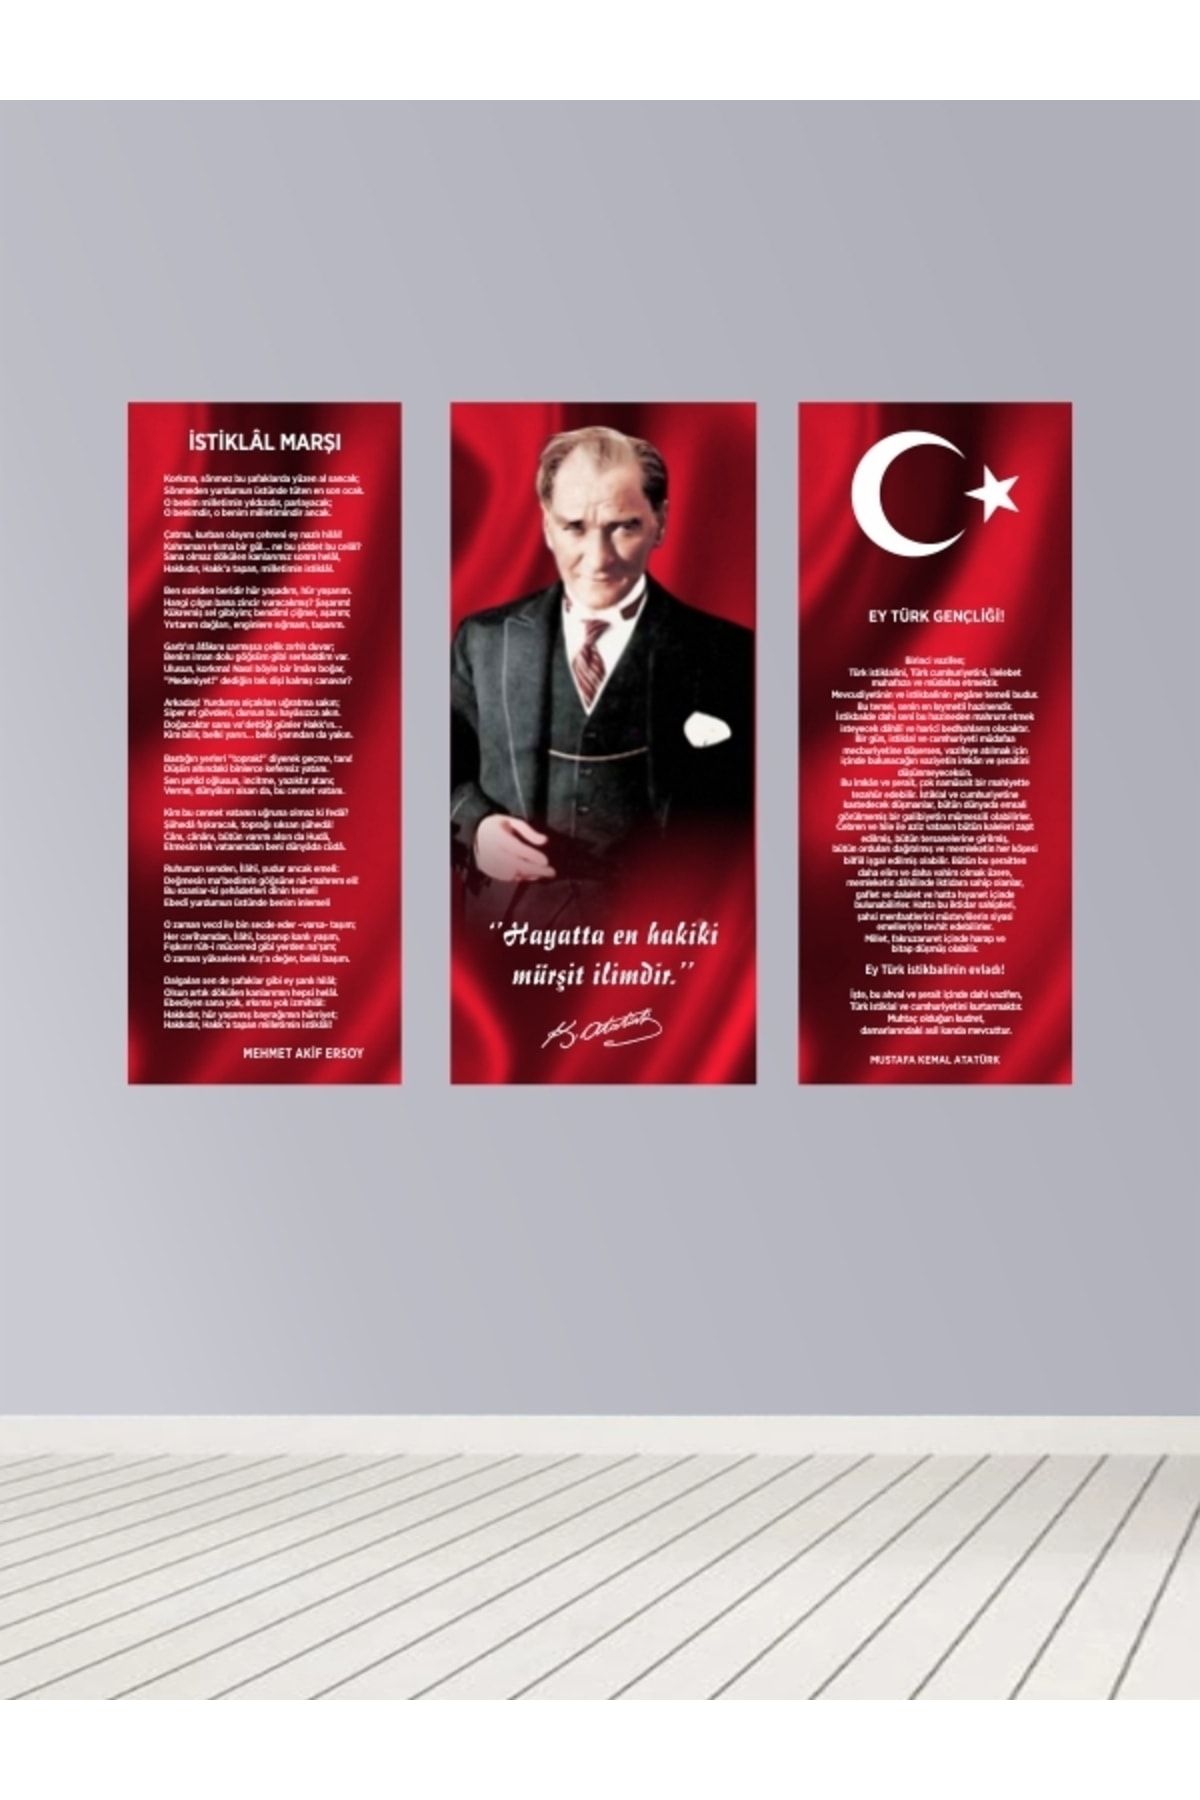 mevastore Atatürk Köşesi, Istaklal Marşı, Gençliğe Hitabe, Atatürk Poster 3'lü Mdf Tablo